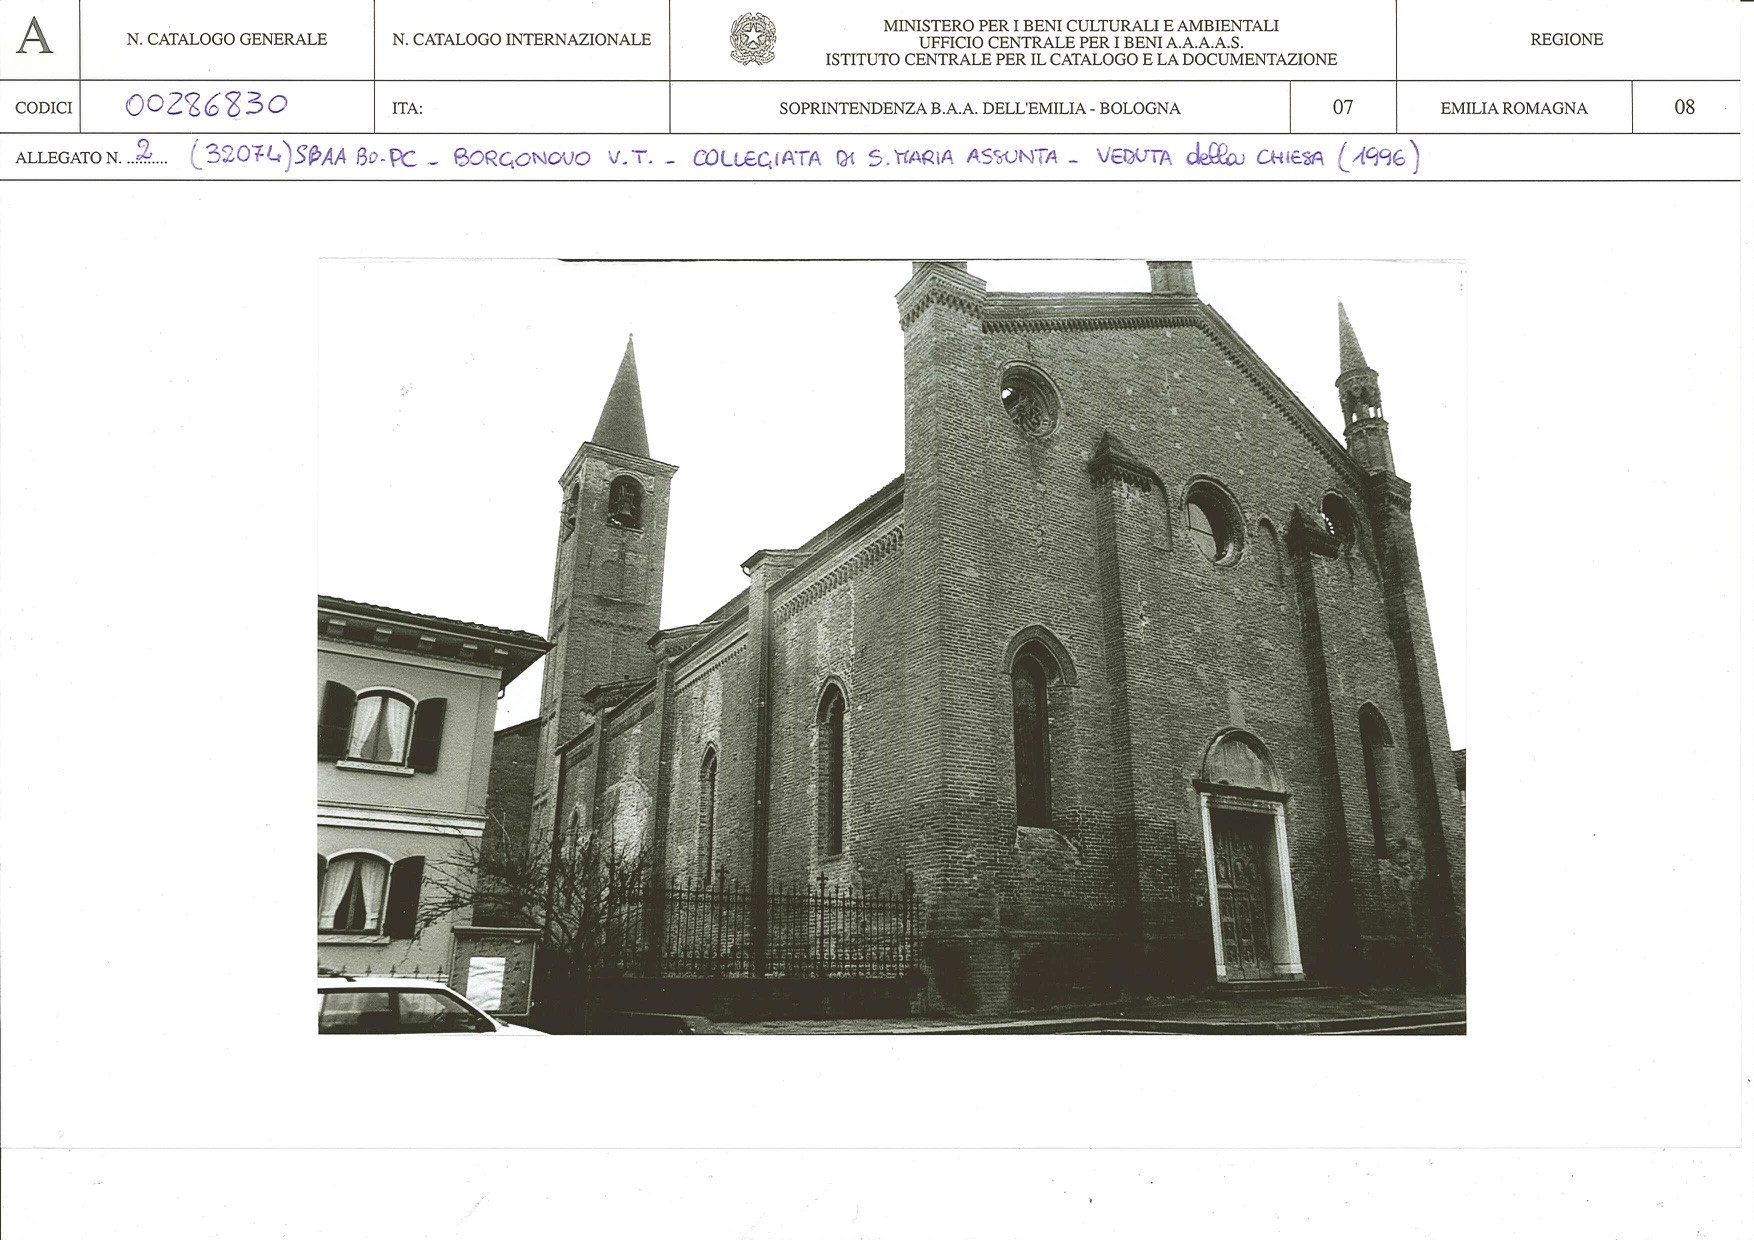 Collegiata di S. Maria Assunta (edilizia civile complessa a corpi separati, chiesistica) - Borgonovo Val Tidone (PC) 